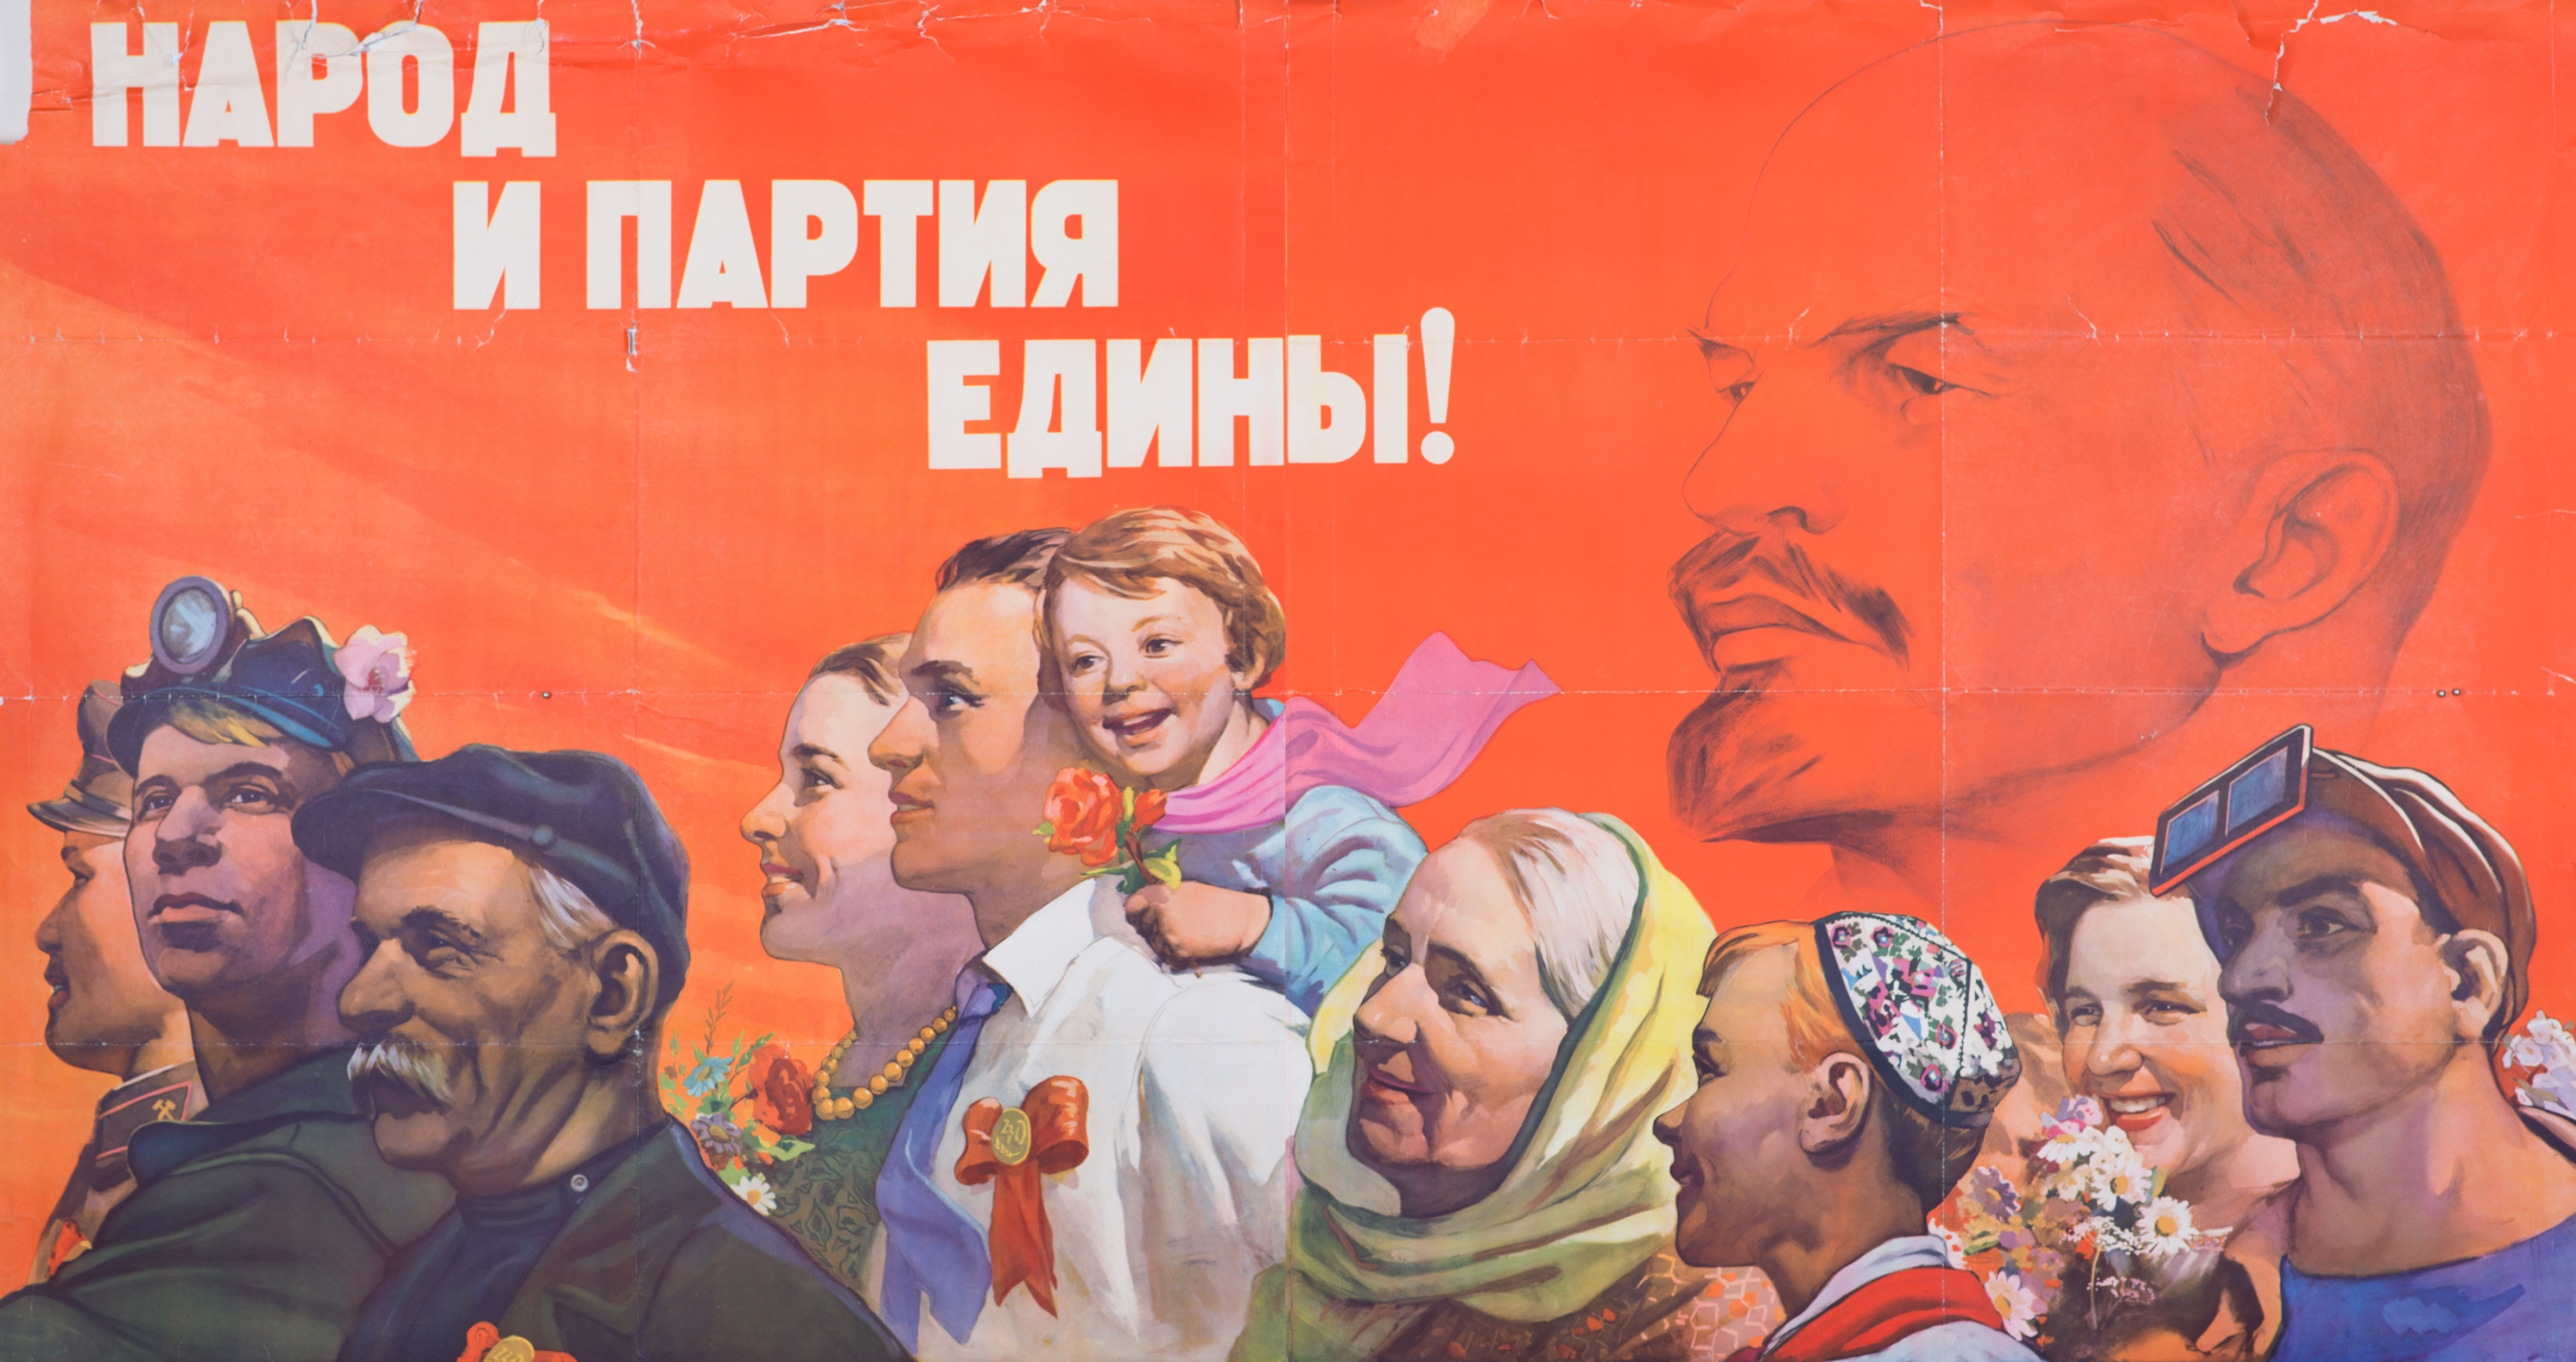 Партия право народу. Народ и партия едины плакат. Советские партийные плакаты. Советские плакаты про партию. Советские плакаты народы СССР.